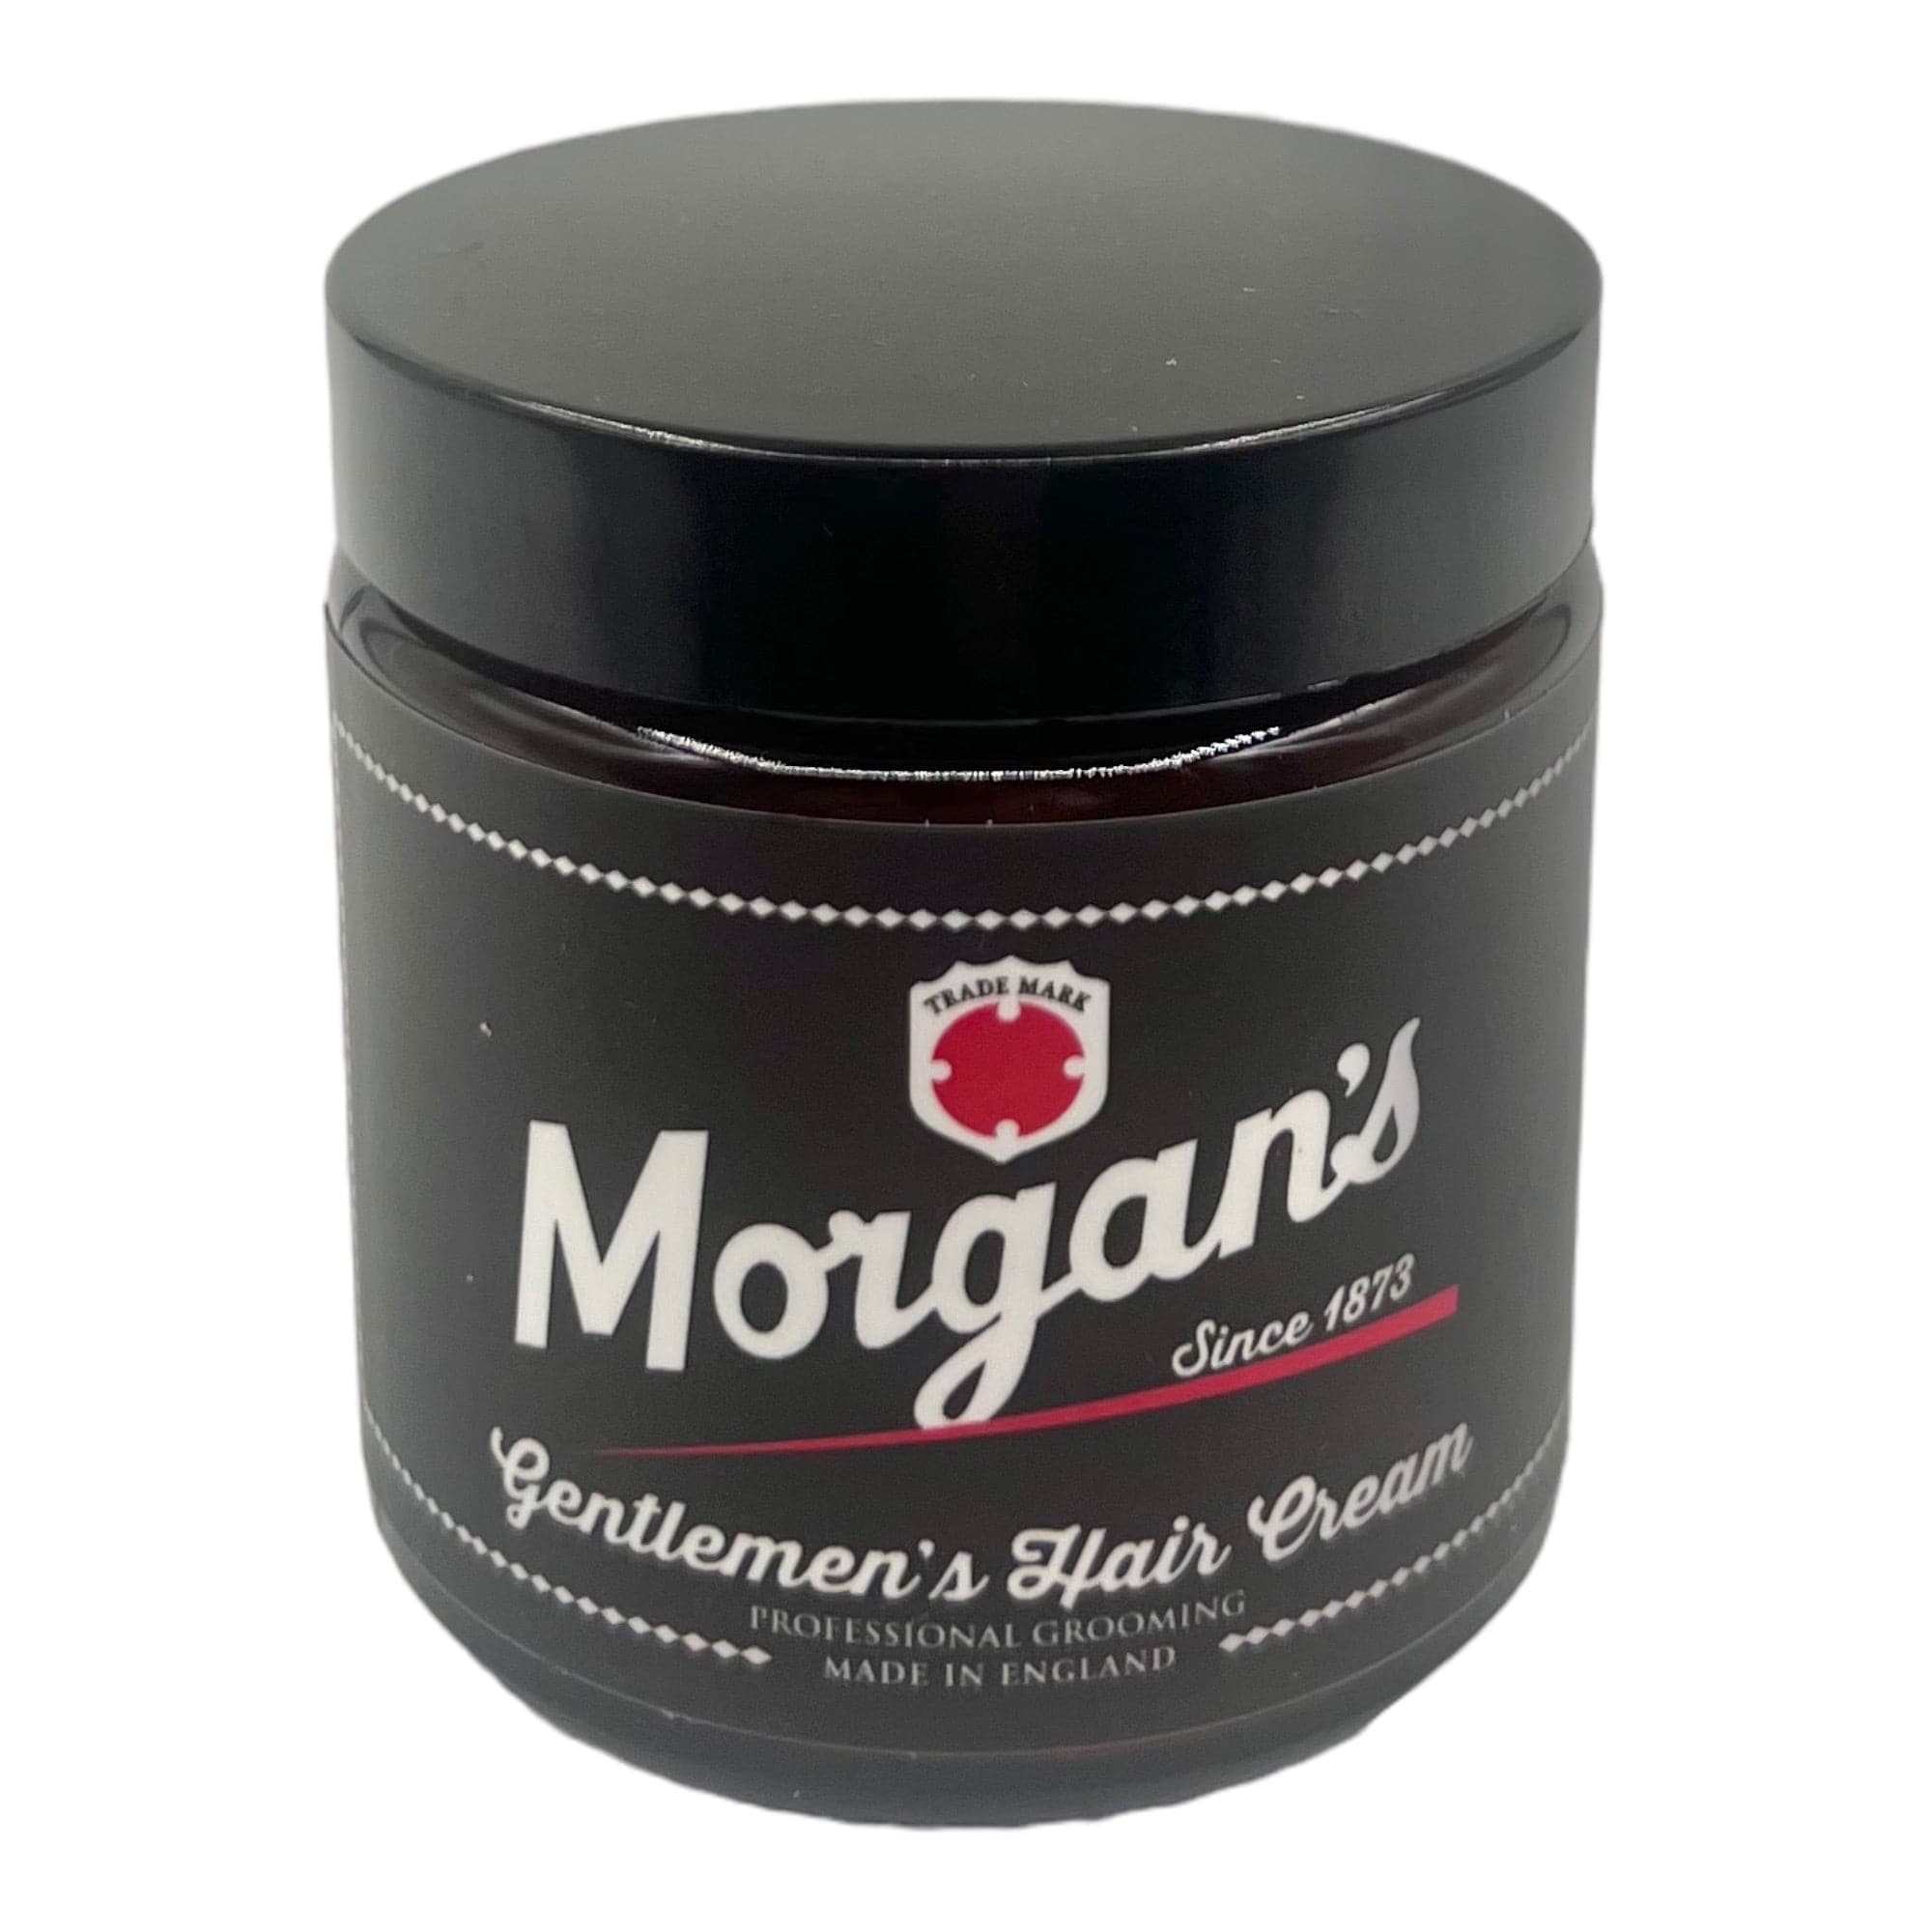 Morgan's - Gentlement's Hair Cream 120ml